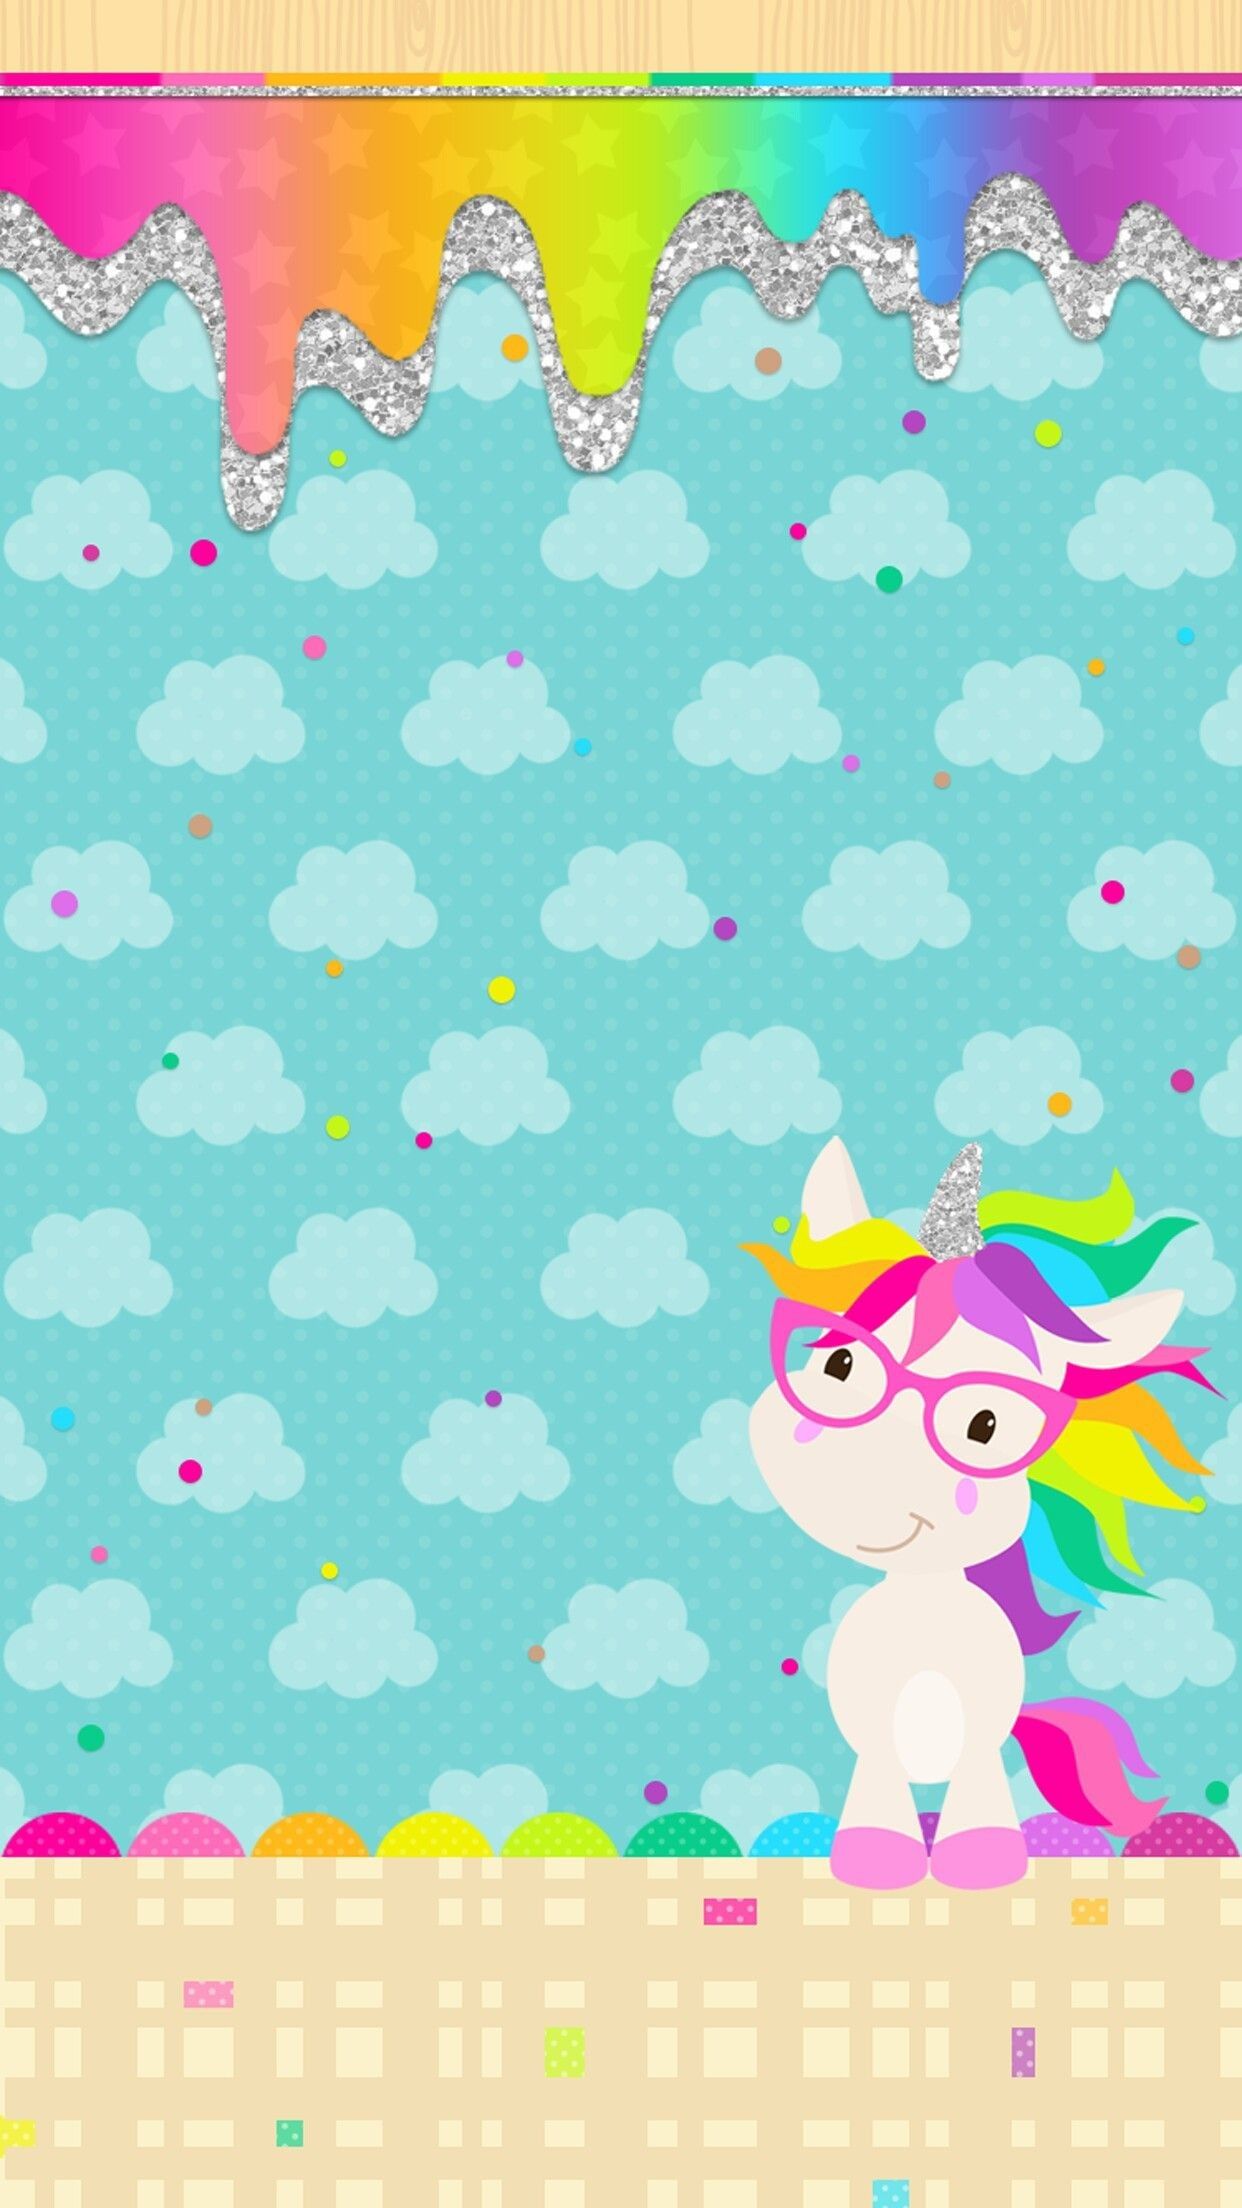 Kawaii Cute Rainbow Wallpaper For iPhoneipcwallpaper.blogspot.com